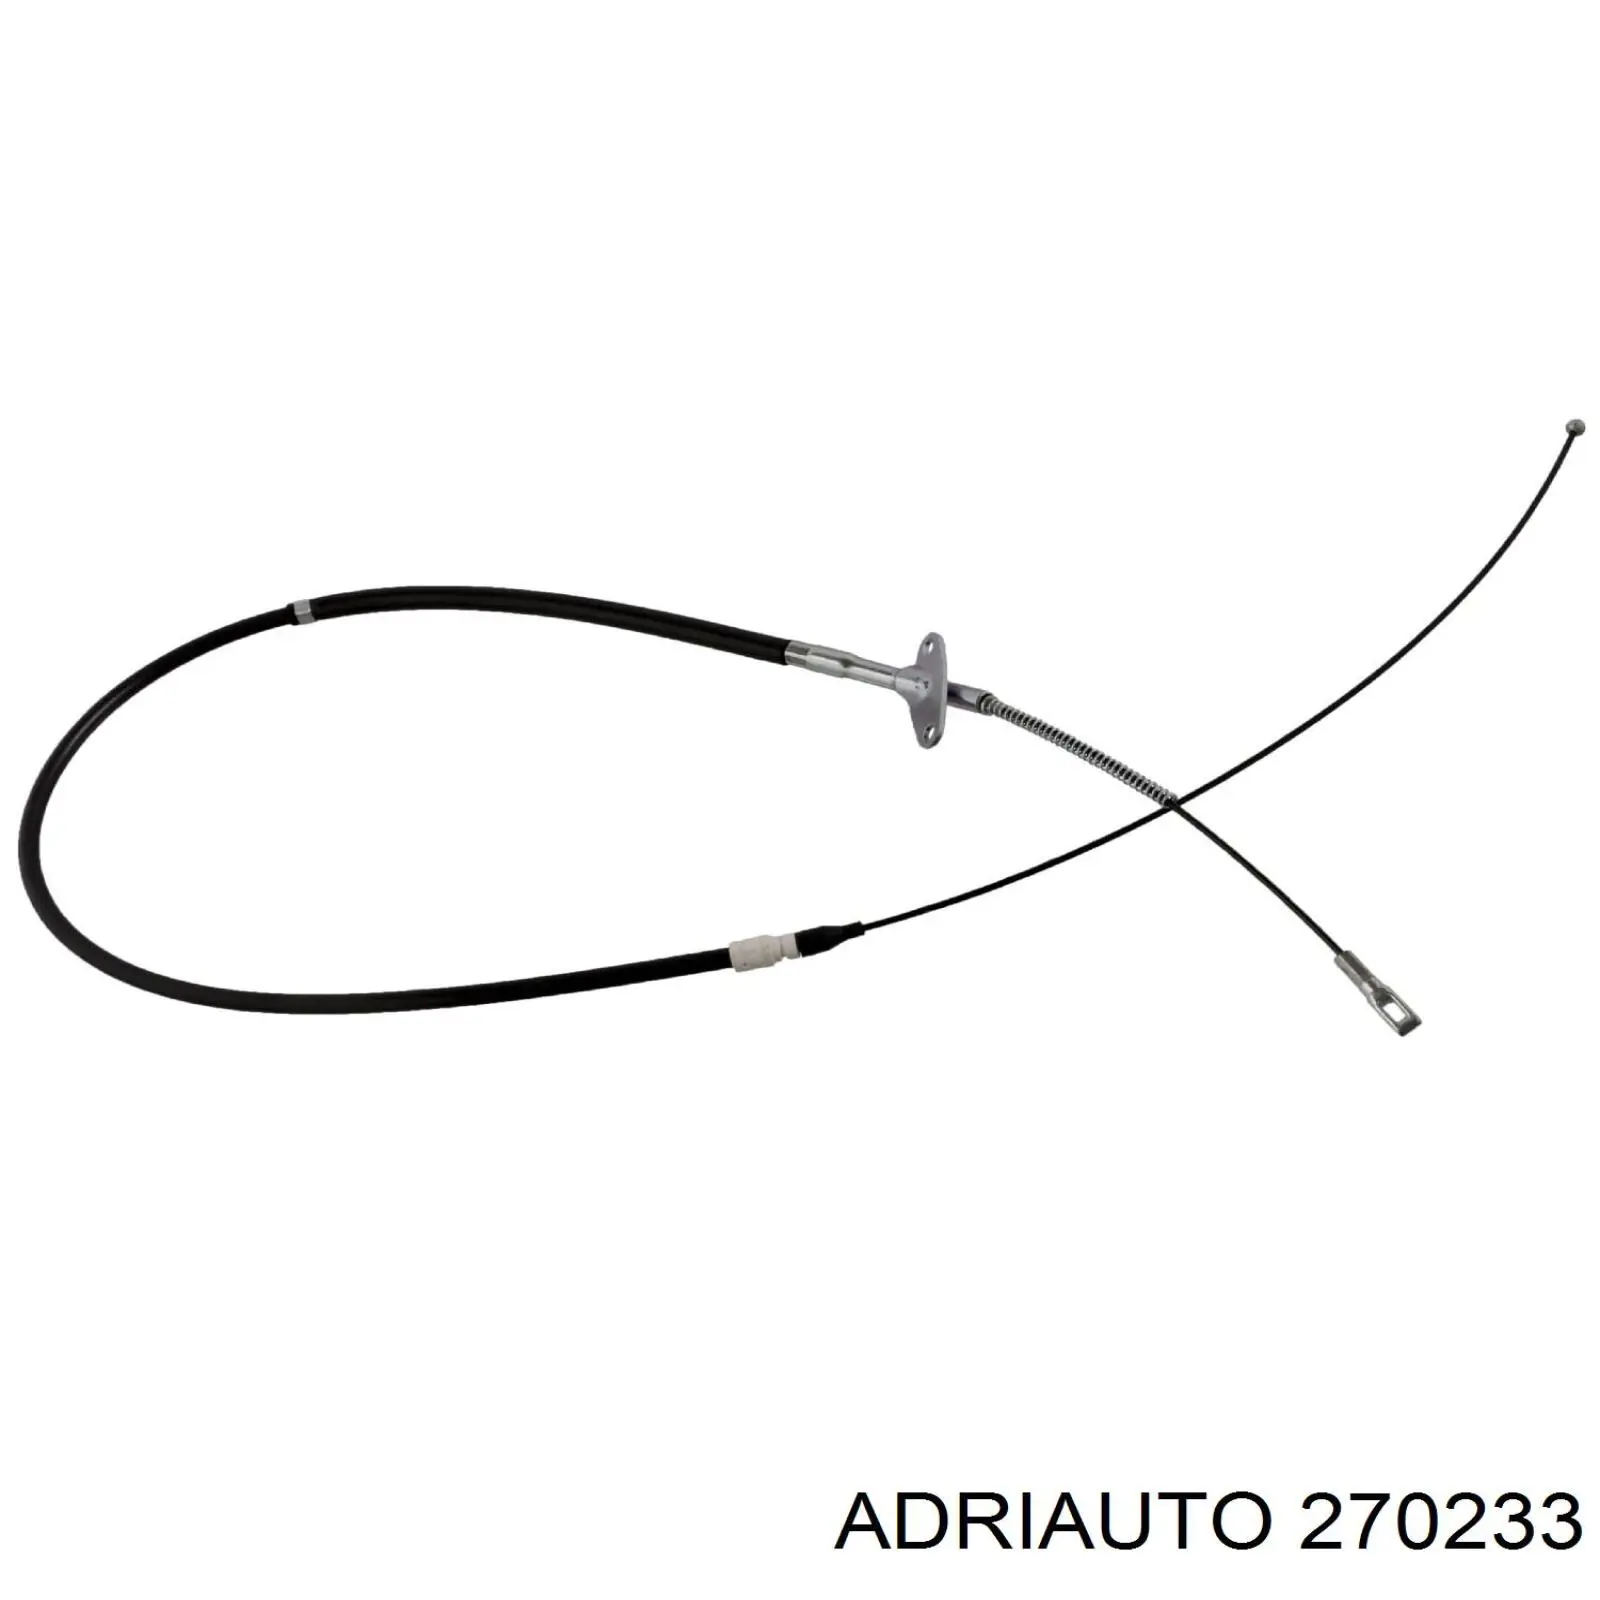 270233 Adriauto cable de freno de mano trasero derecho